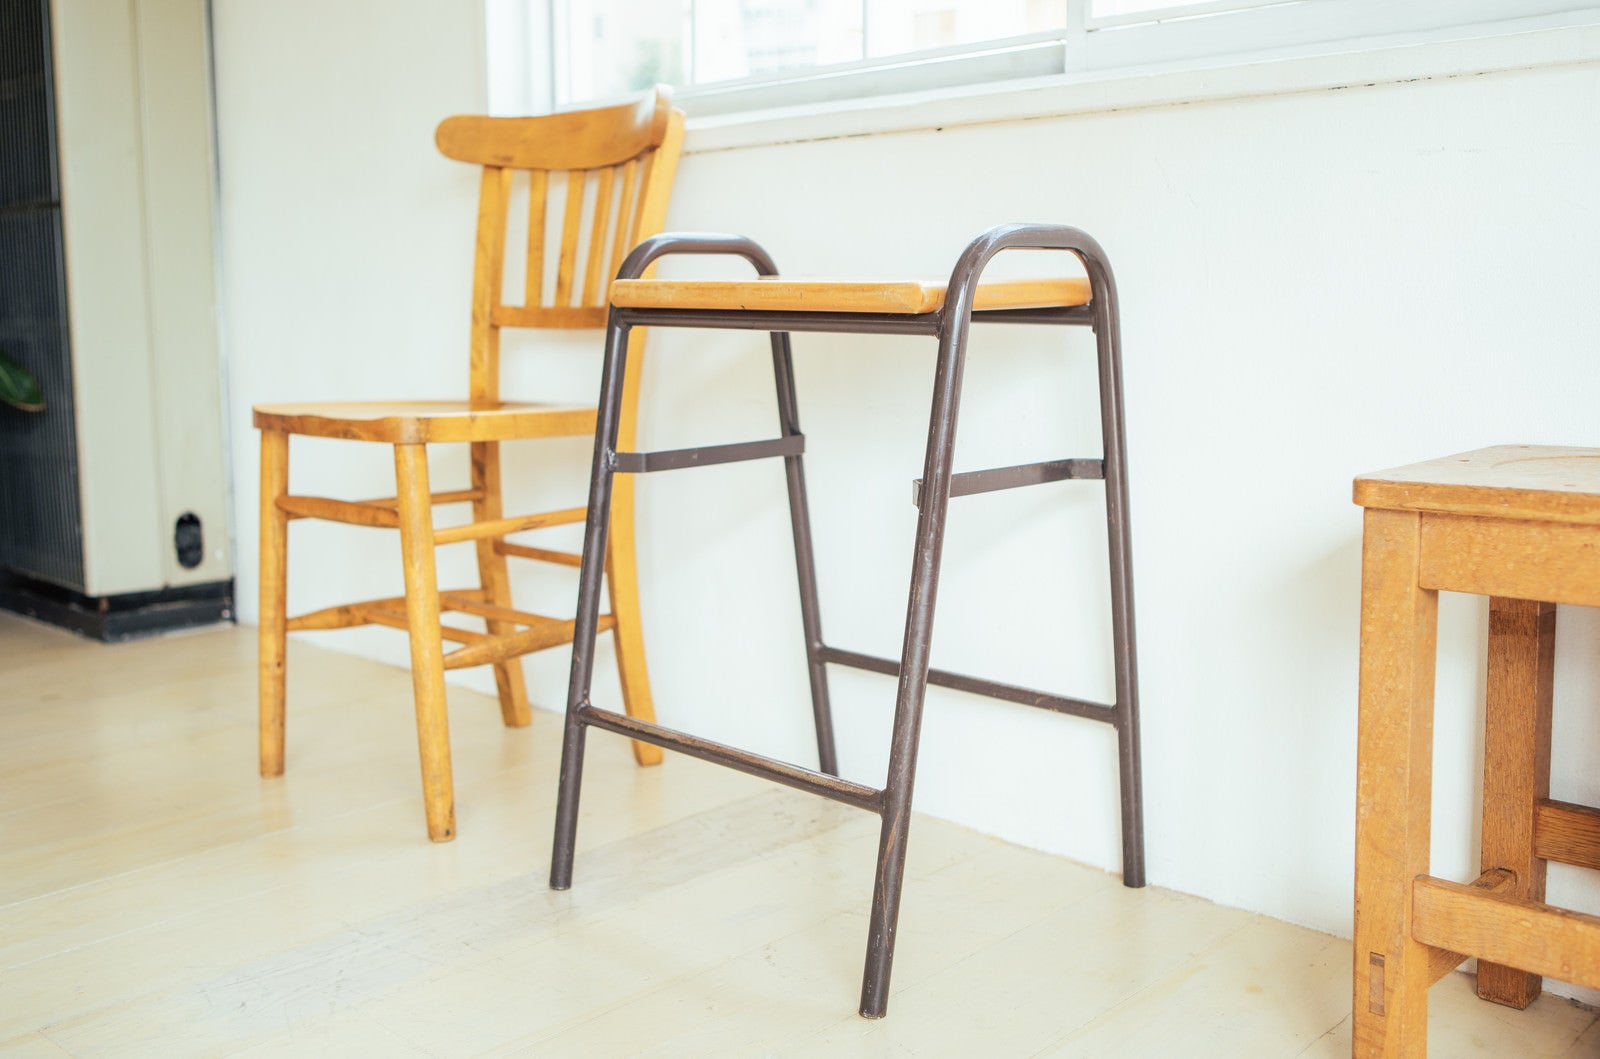 「木製の椅子の間に置かれたサイドテーブル」の写真